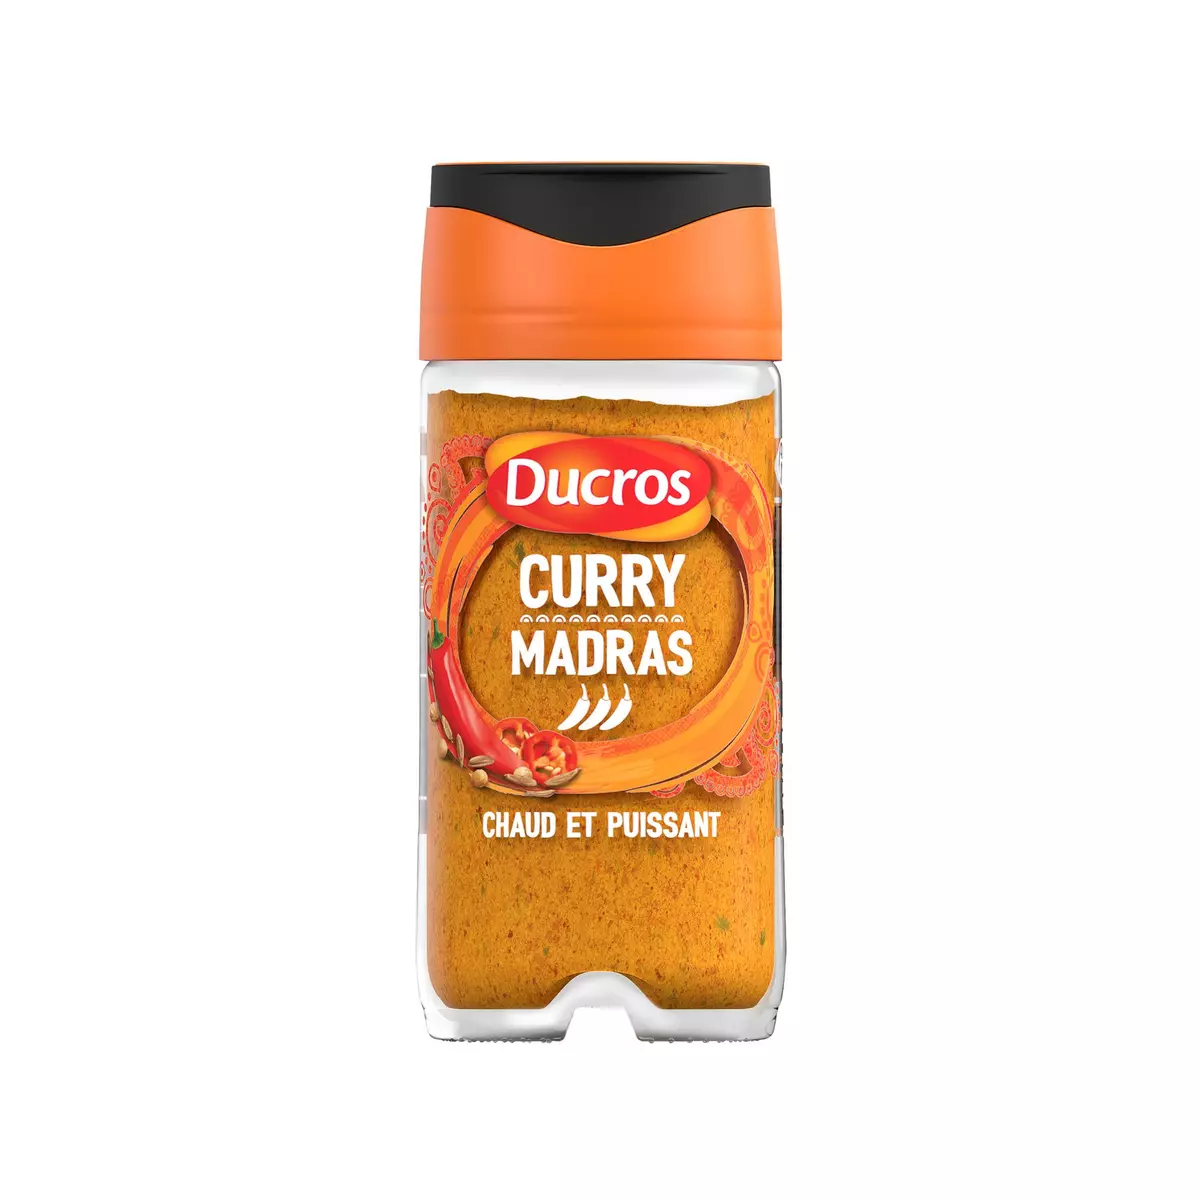 DUCROS Curry madras 45g